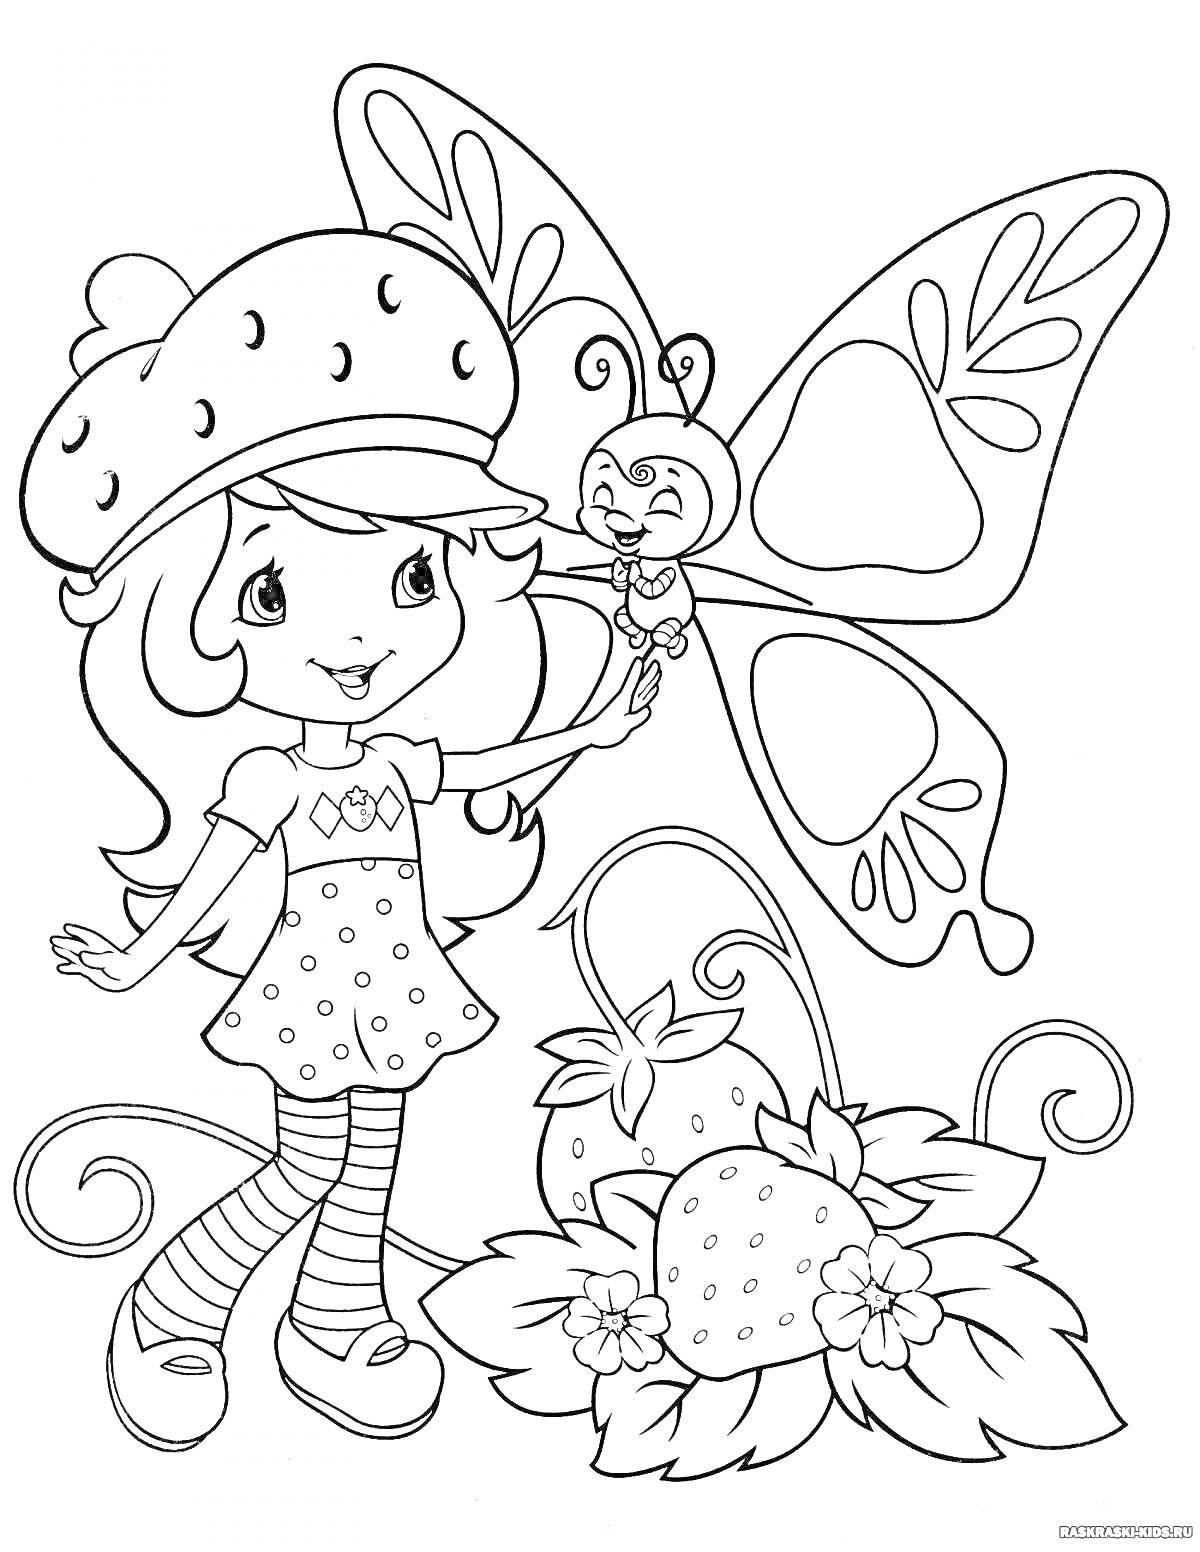 Раскраска Девочка в шляпке, бабочка, клубника и листья